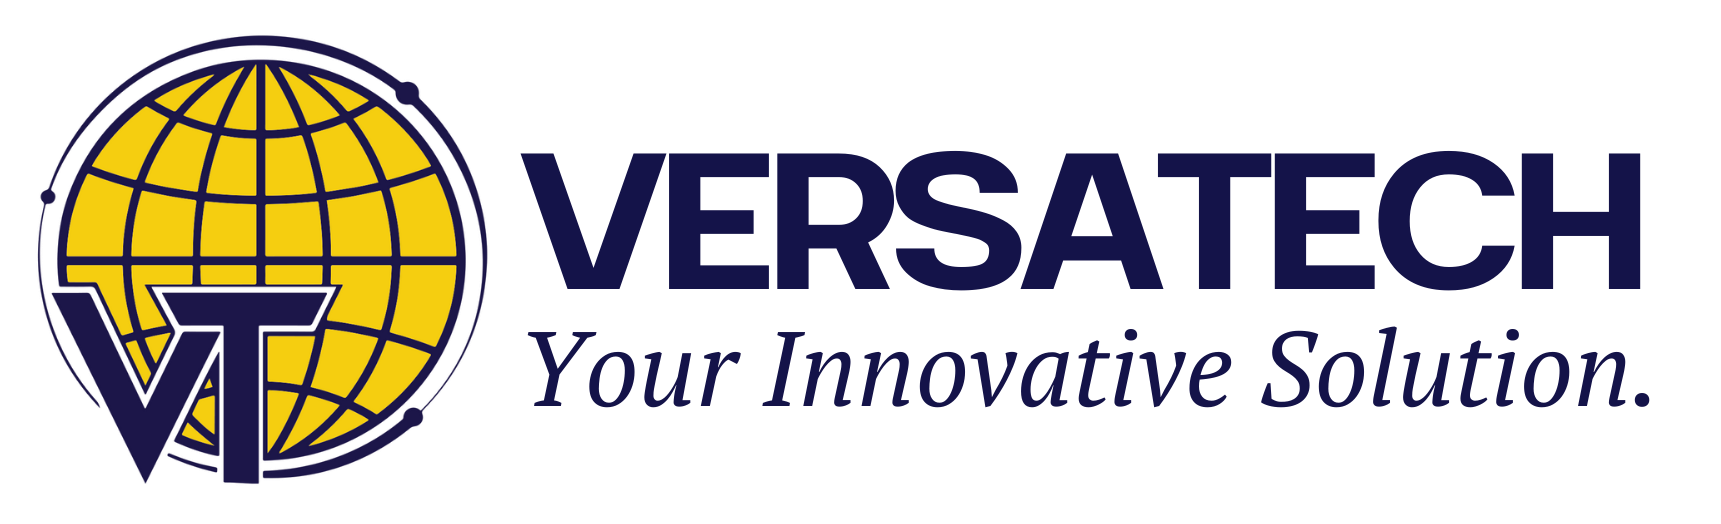 VersaTech Inc. logo